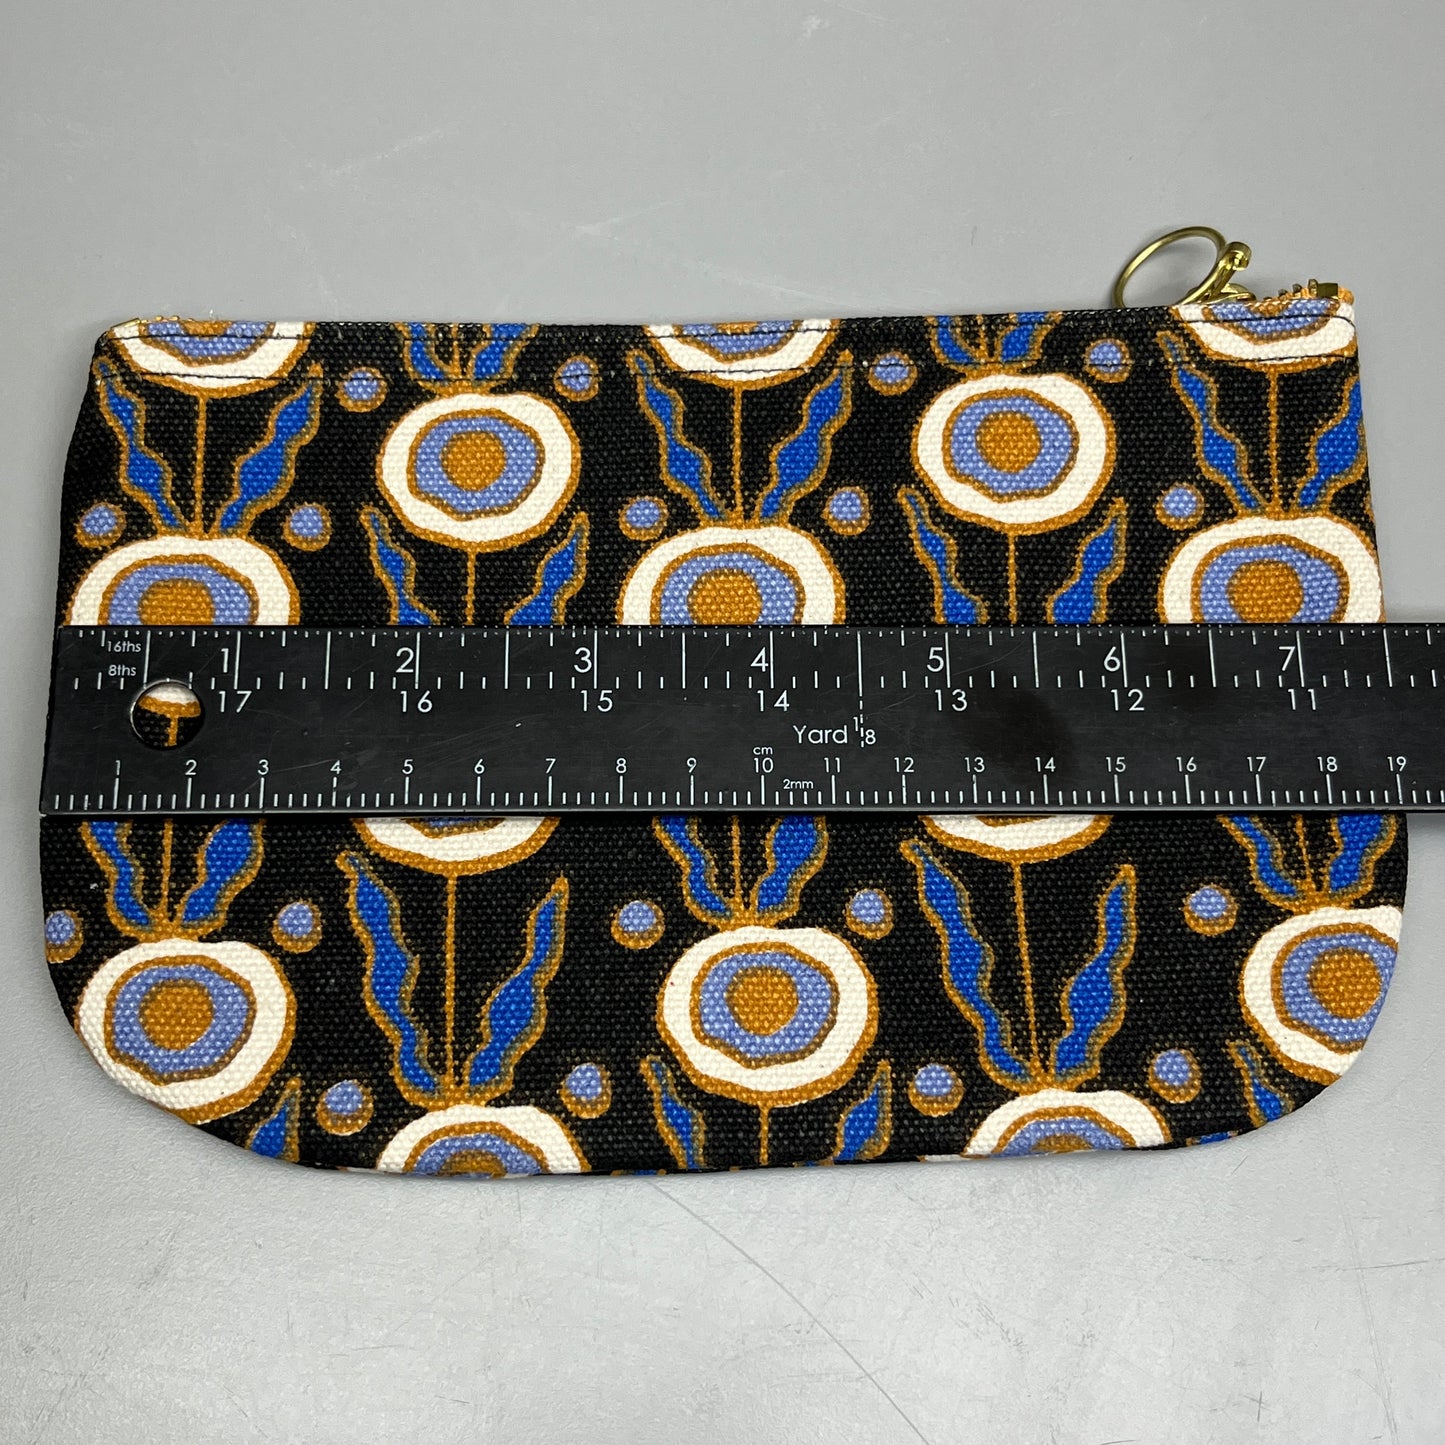 DANICA STUDIO Still Life Small Zipper Pouch 7" x 4.5" Black/Design 7002645 (New)